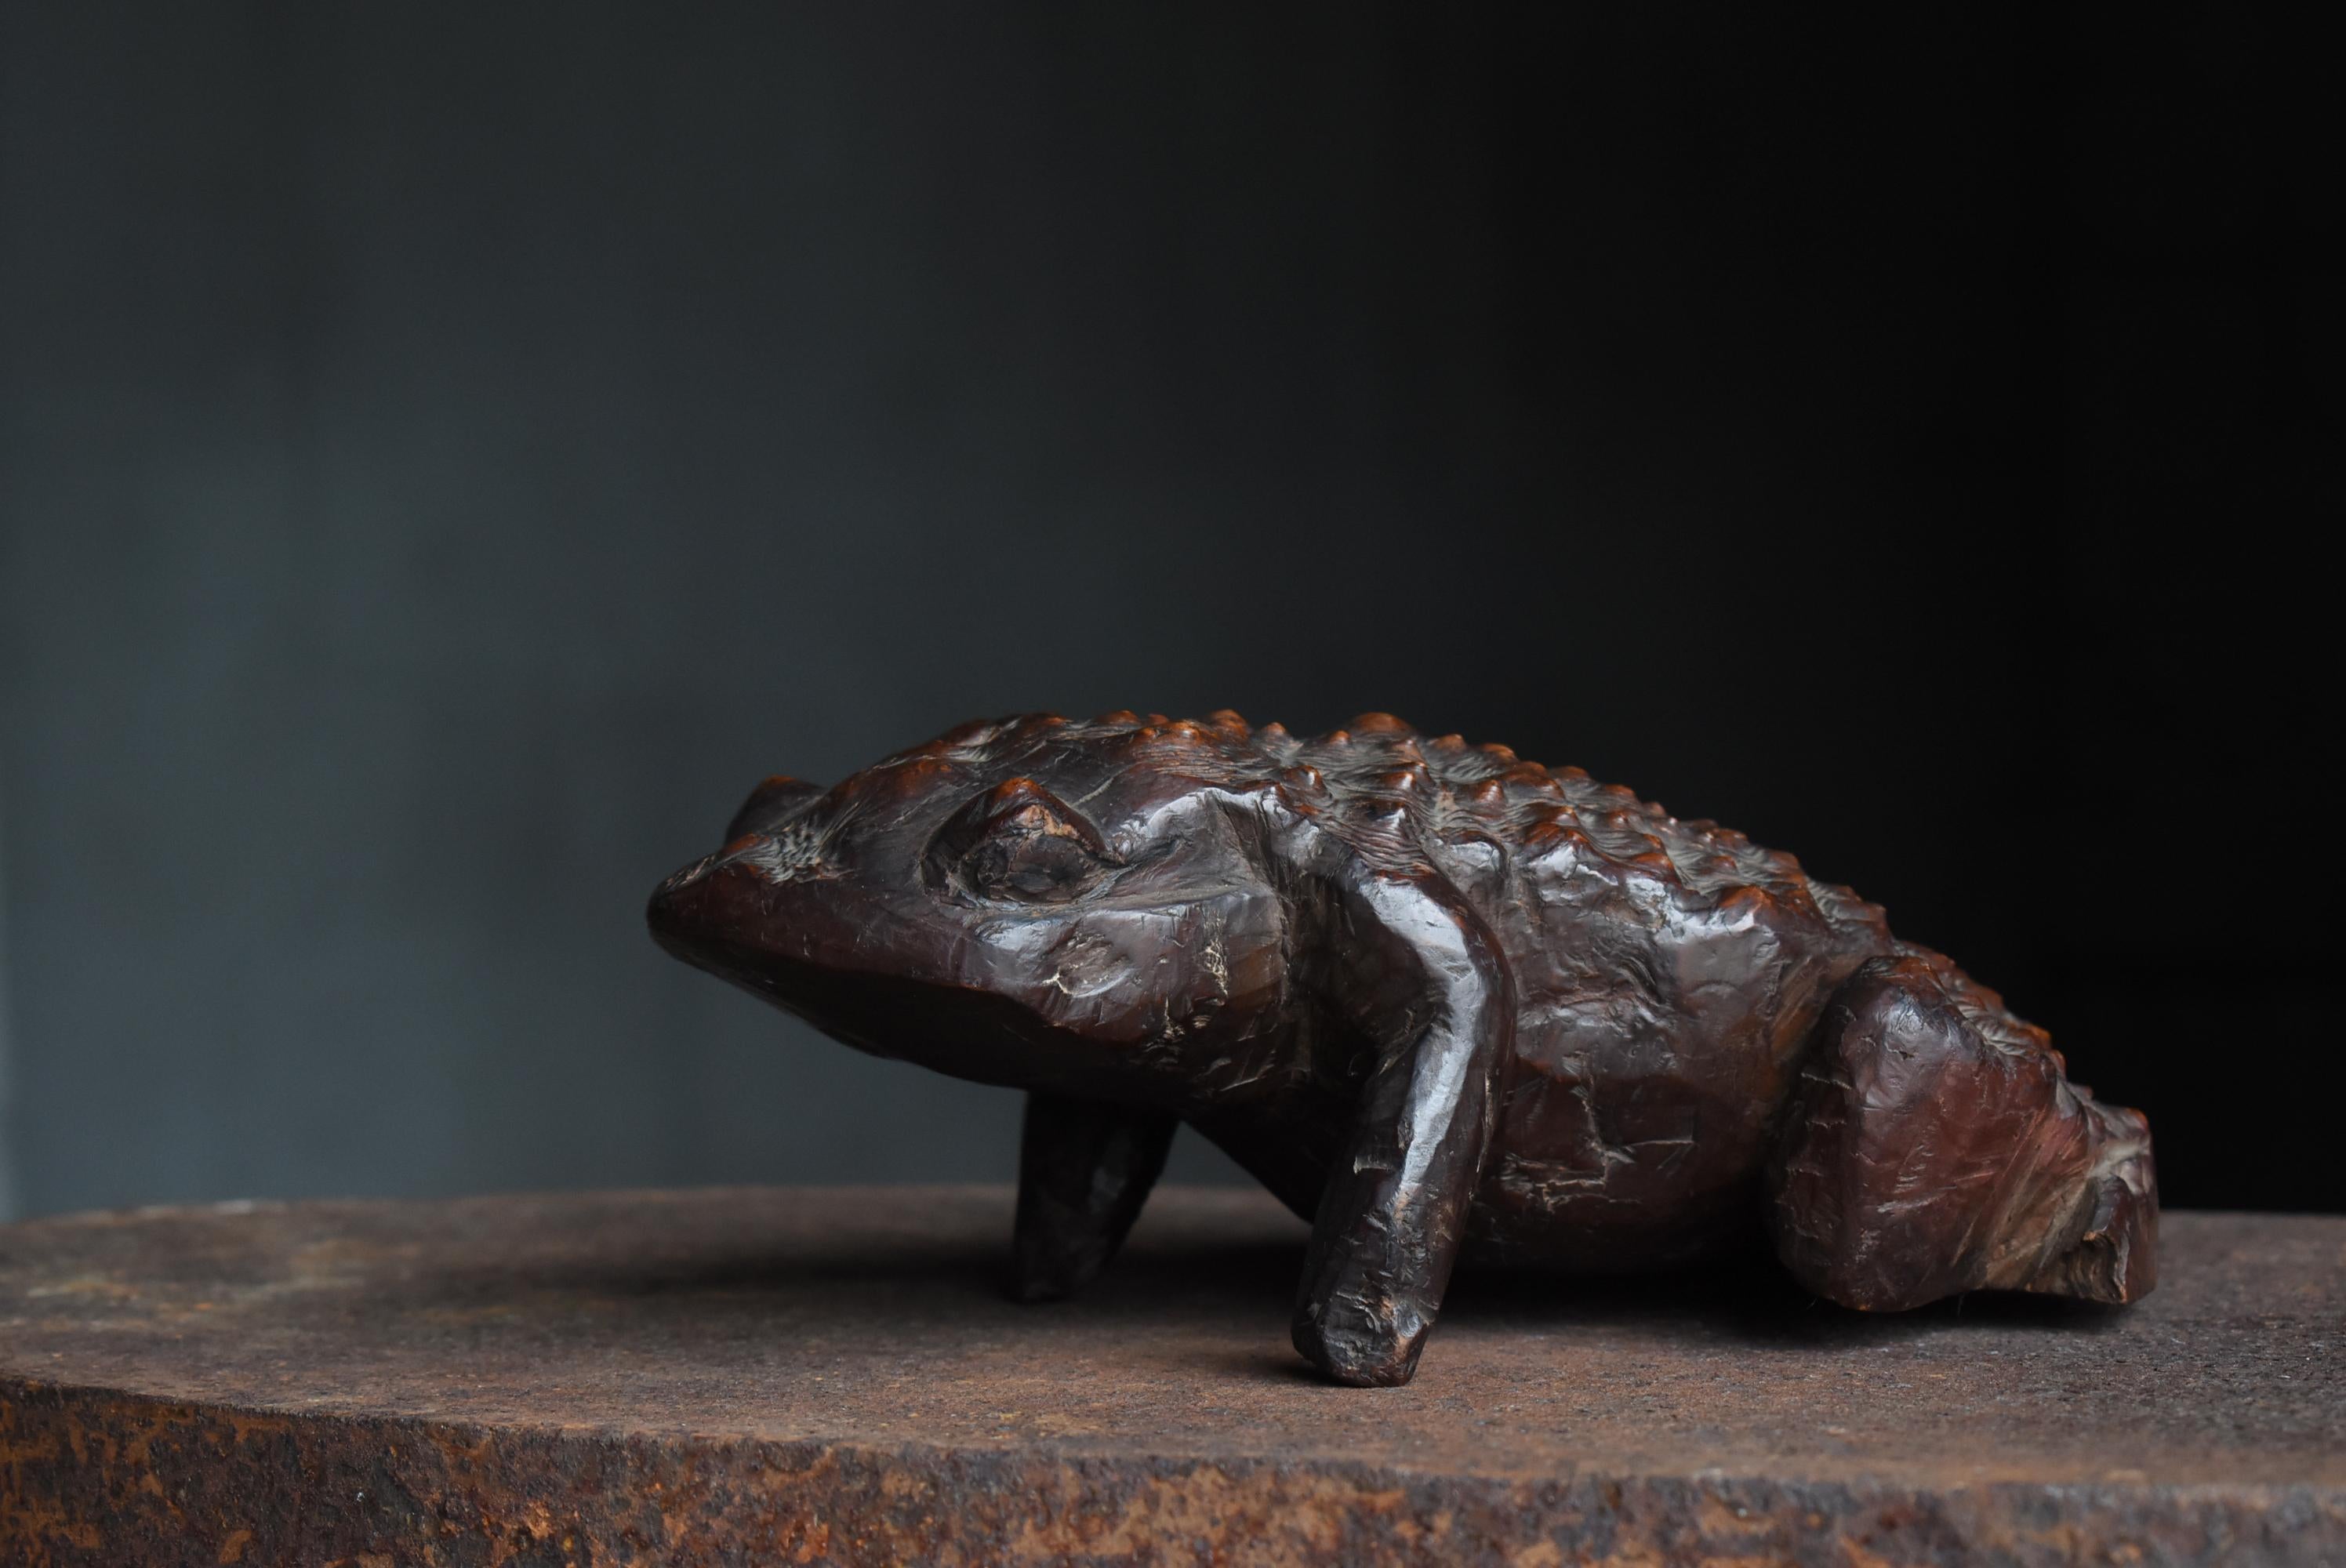 Primitive Japanese Antique Wood Carving Frog 1900s-1940s / Sculpture Wabi Sabi  For Sale